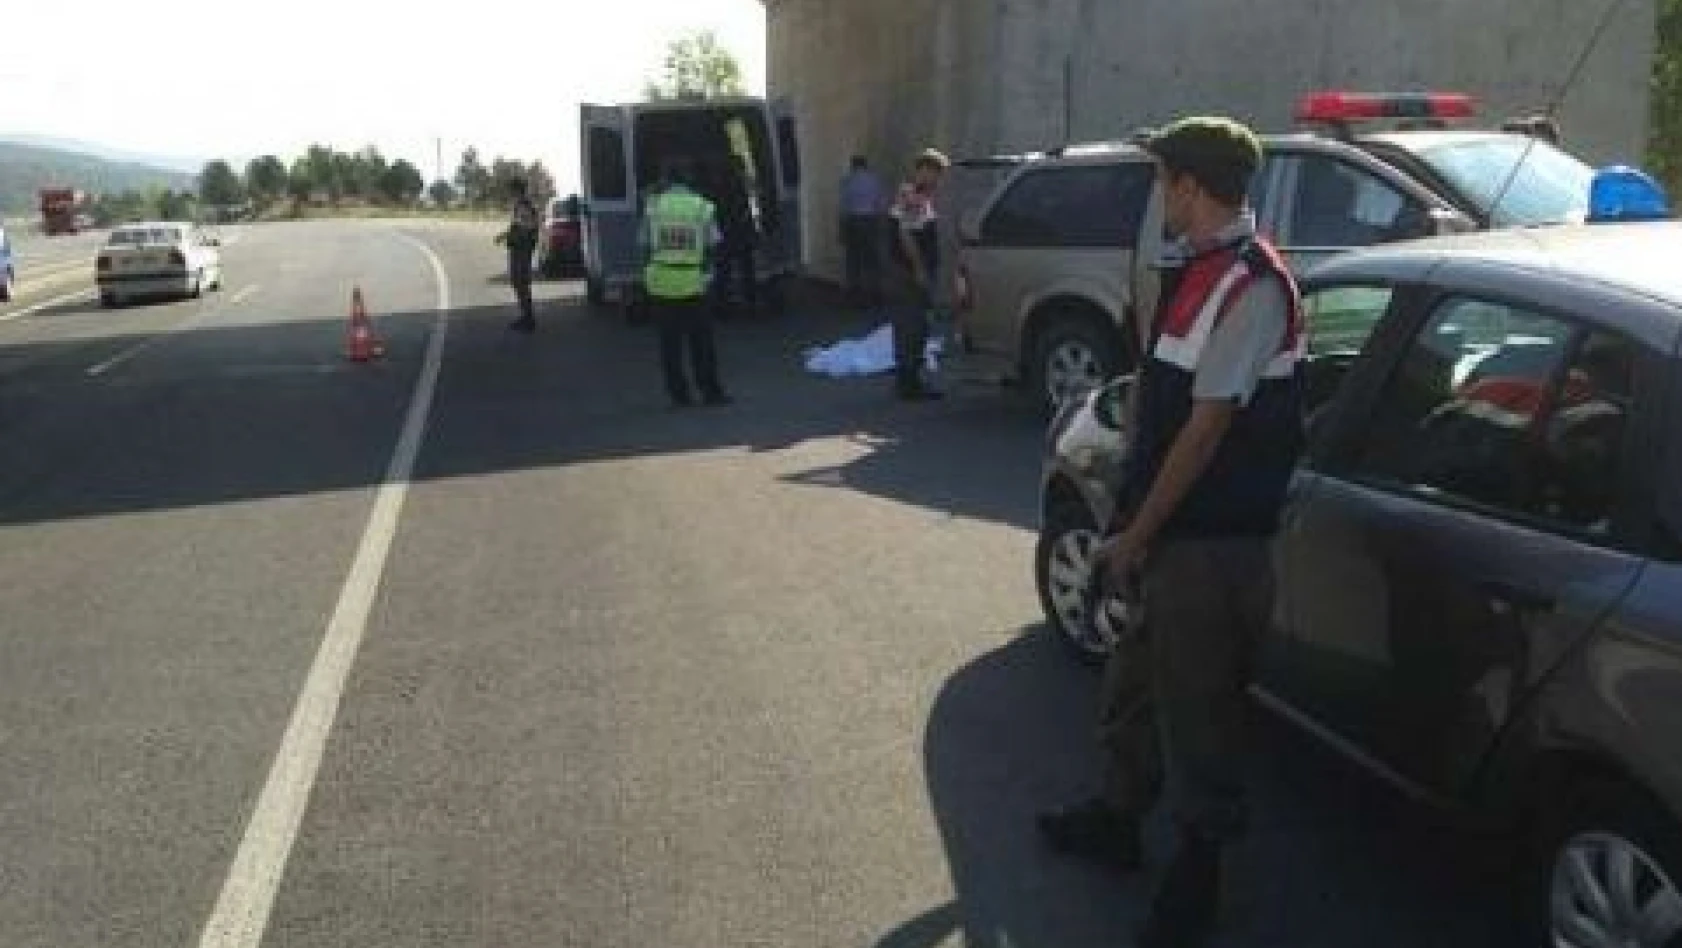 Kastamonu Tosya'da Trafik Kazası: 4 Ölü, 1 Yaralı